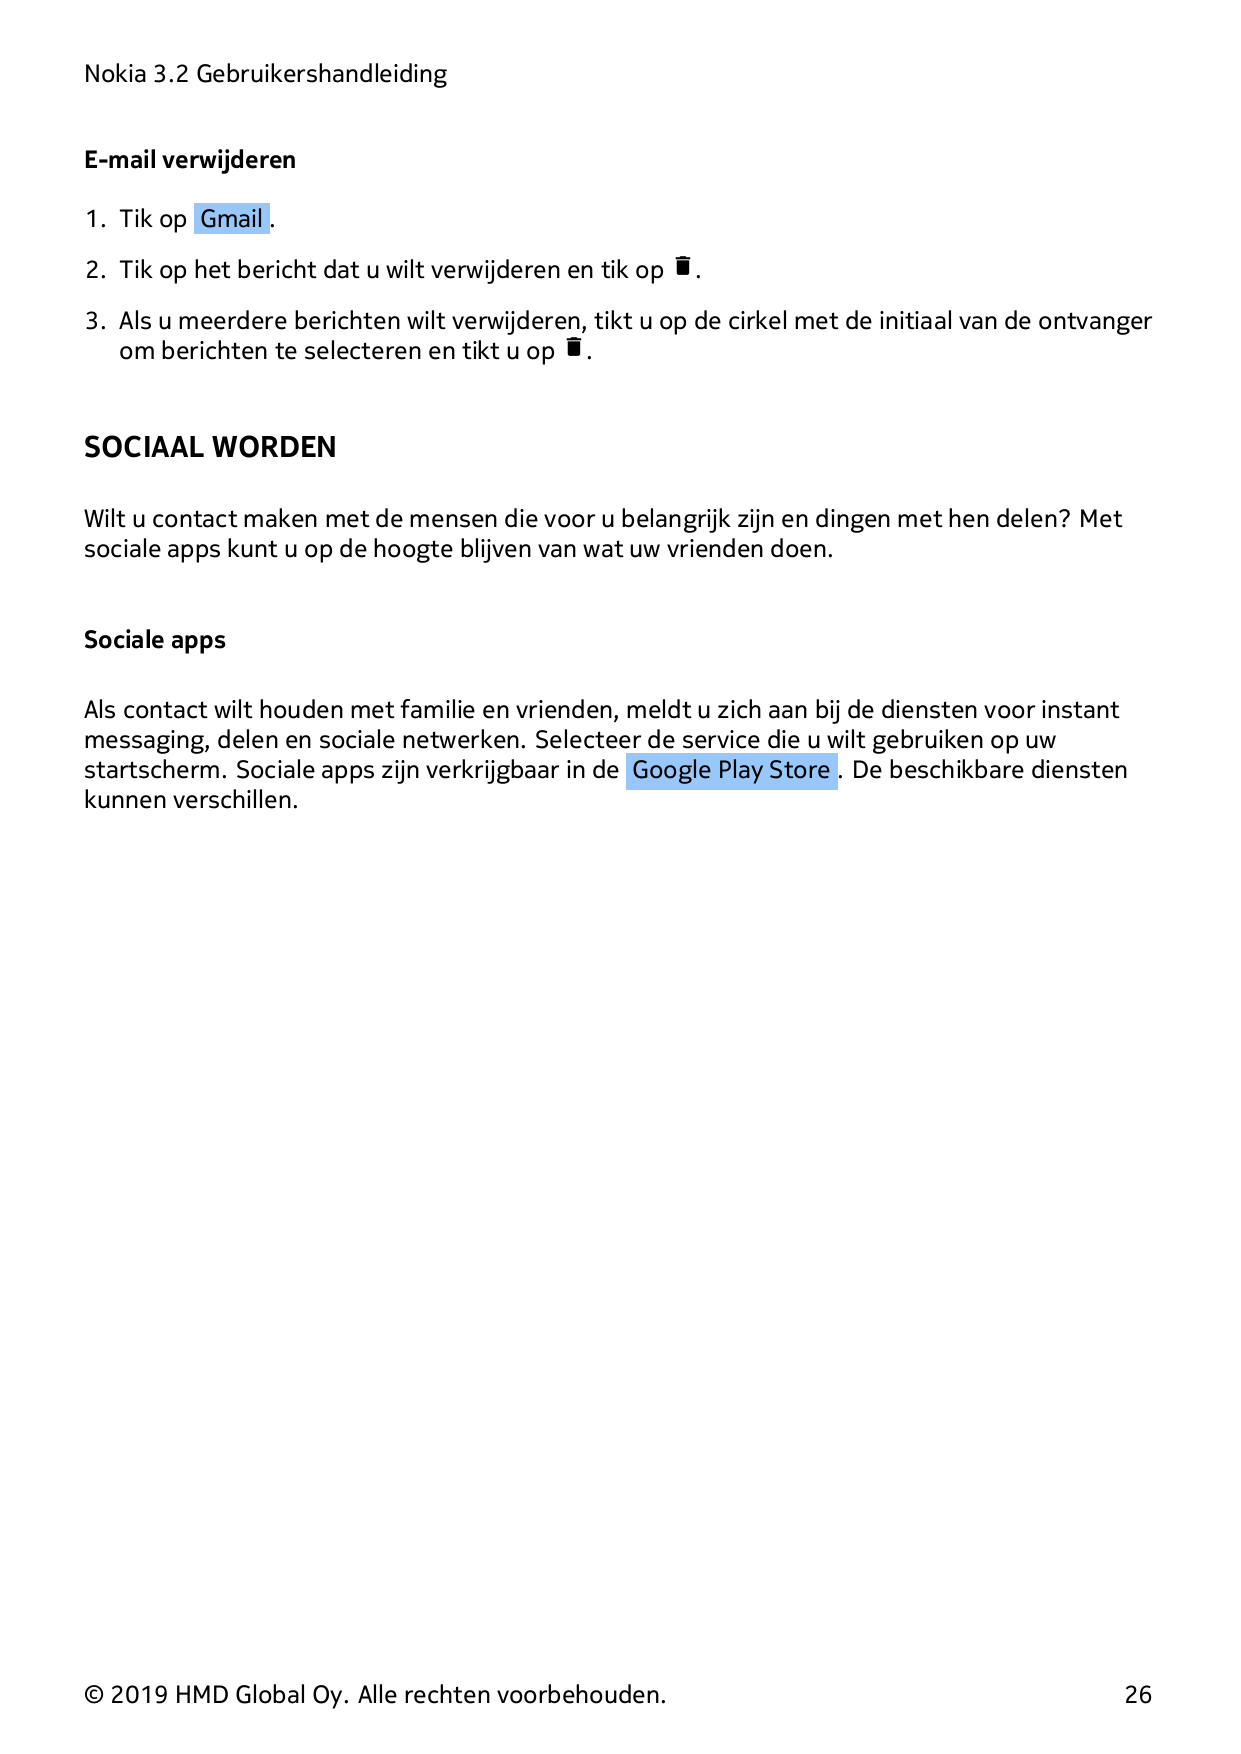 Nokia 3.2 GebruikershandleidingE-mail verwijderen1. Tik op Gmail .2. Tik op het bericht dat u wilt verwijderen en tik op �.3. Al